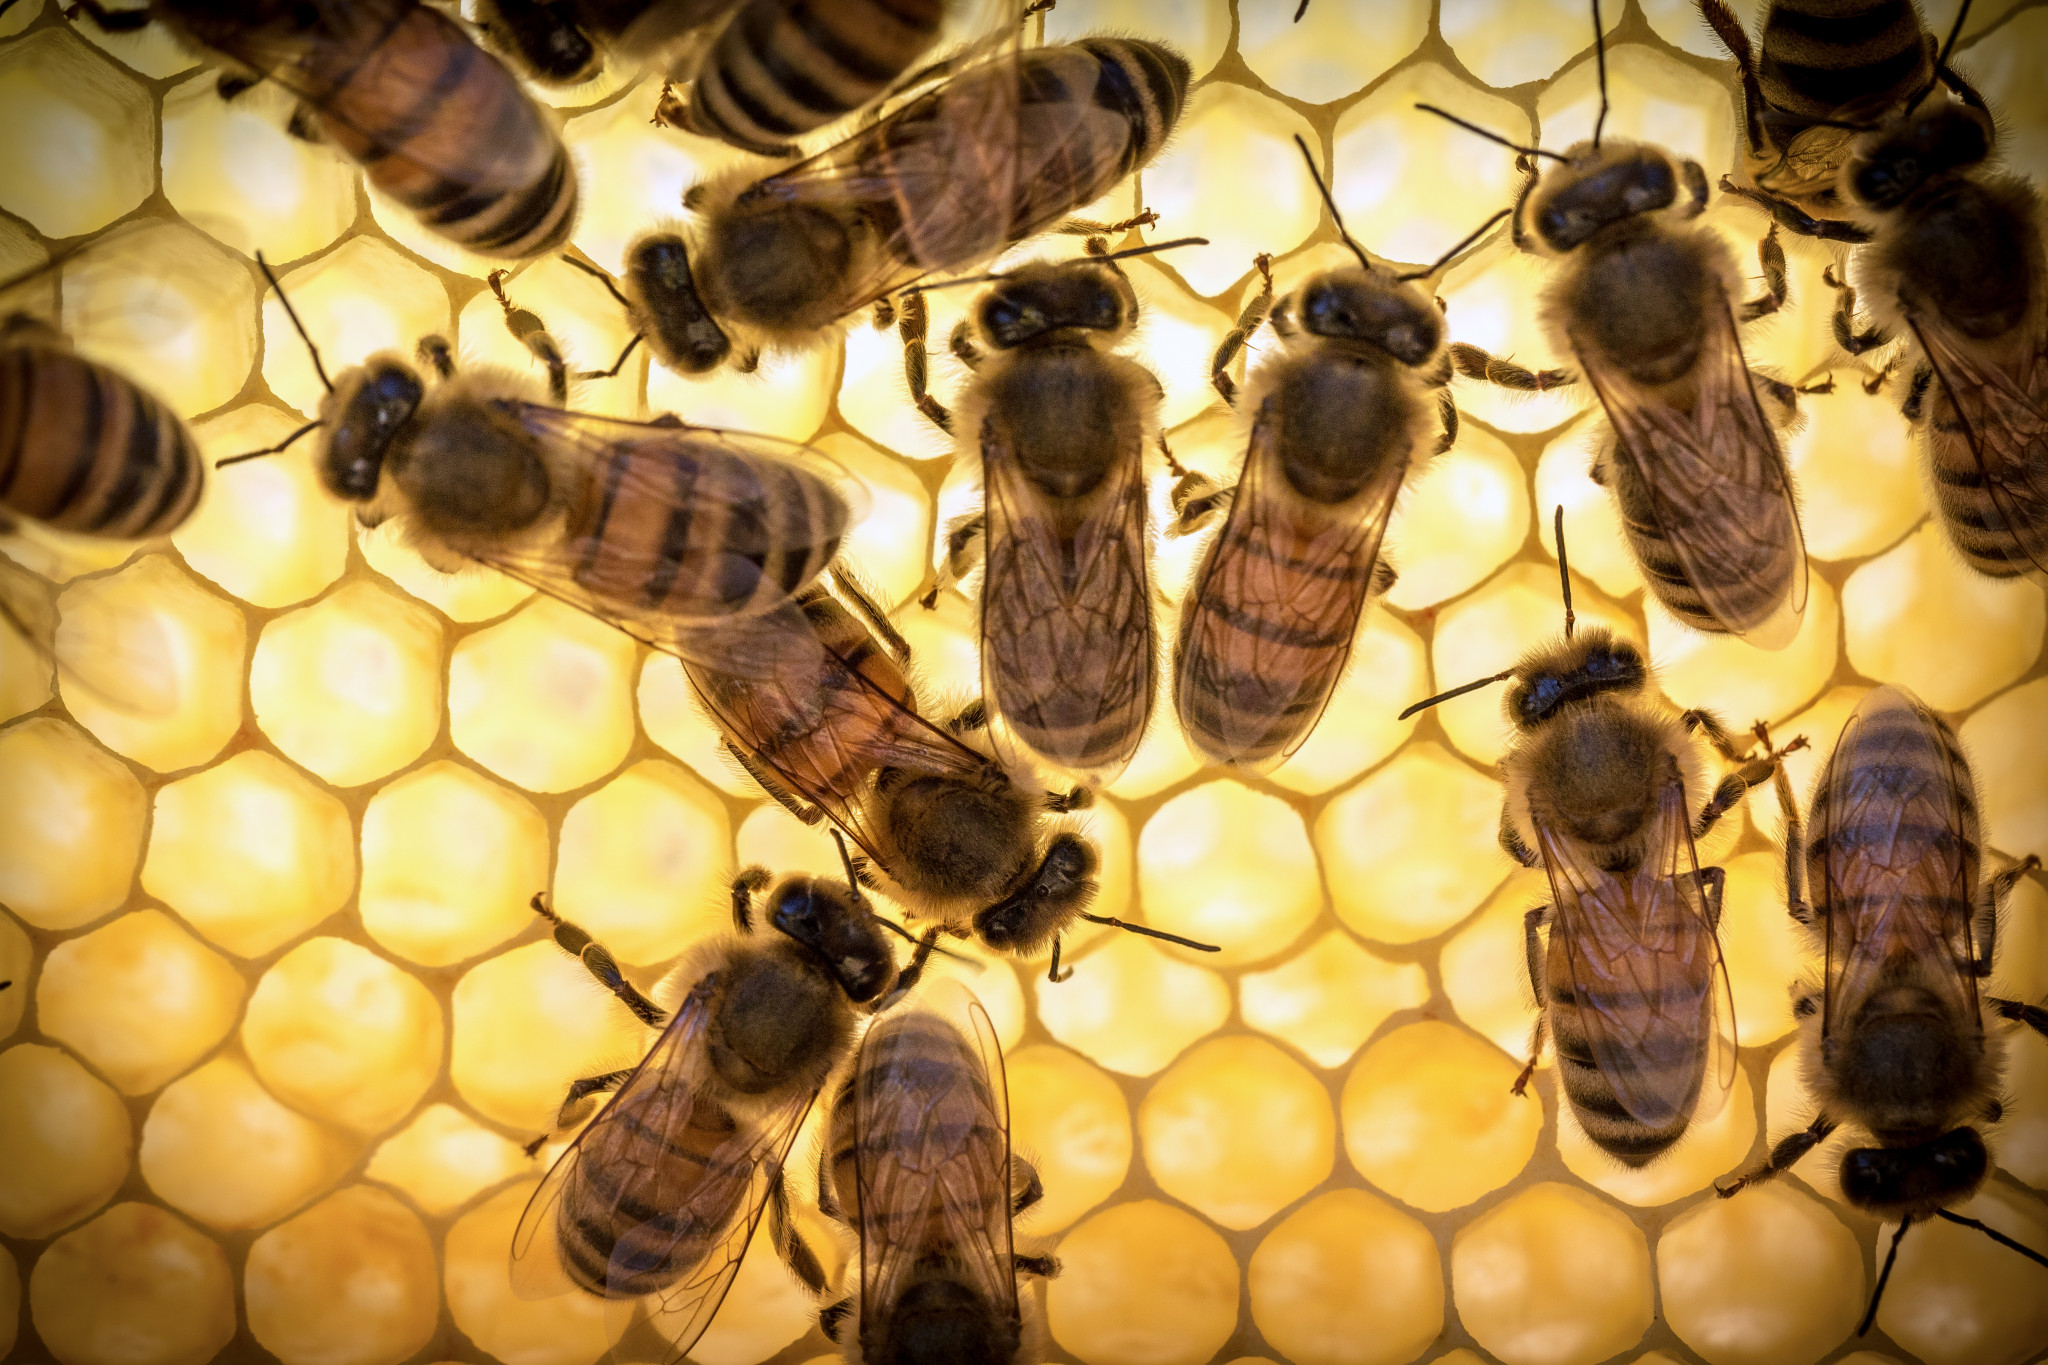 Bee արքայական ժելեը խորհուրդ չի տրվում օգտագործել գիշերը, քանի որ նրա ազդեցության տակ մեծացնում է նյարդային ակտիվությունը եւ հնարավոր անքնությունը: